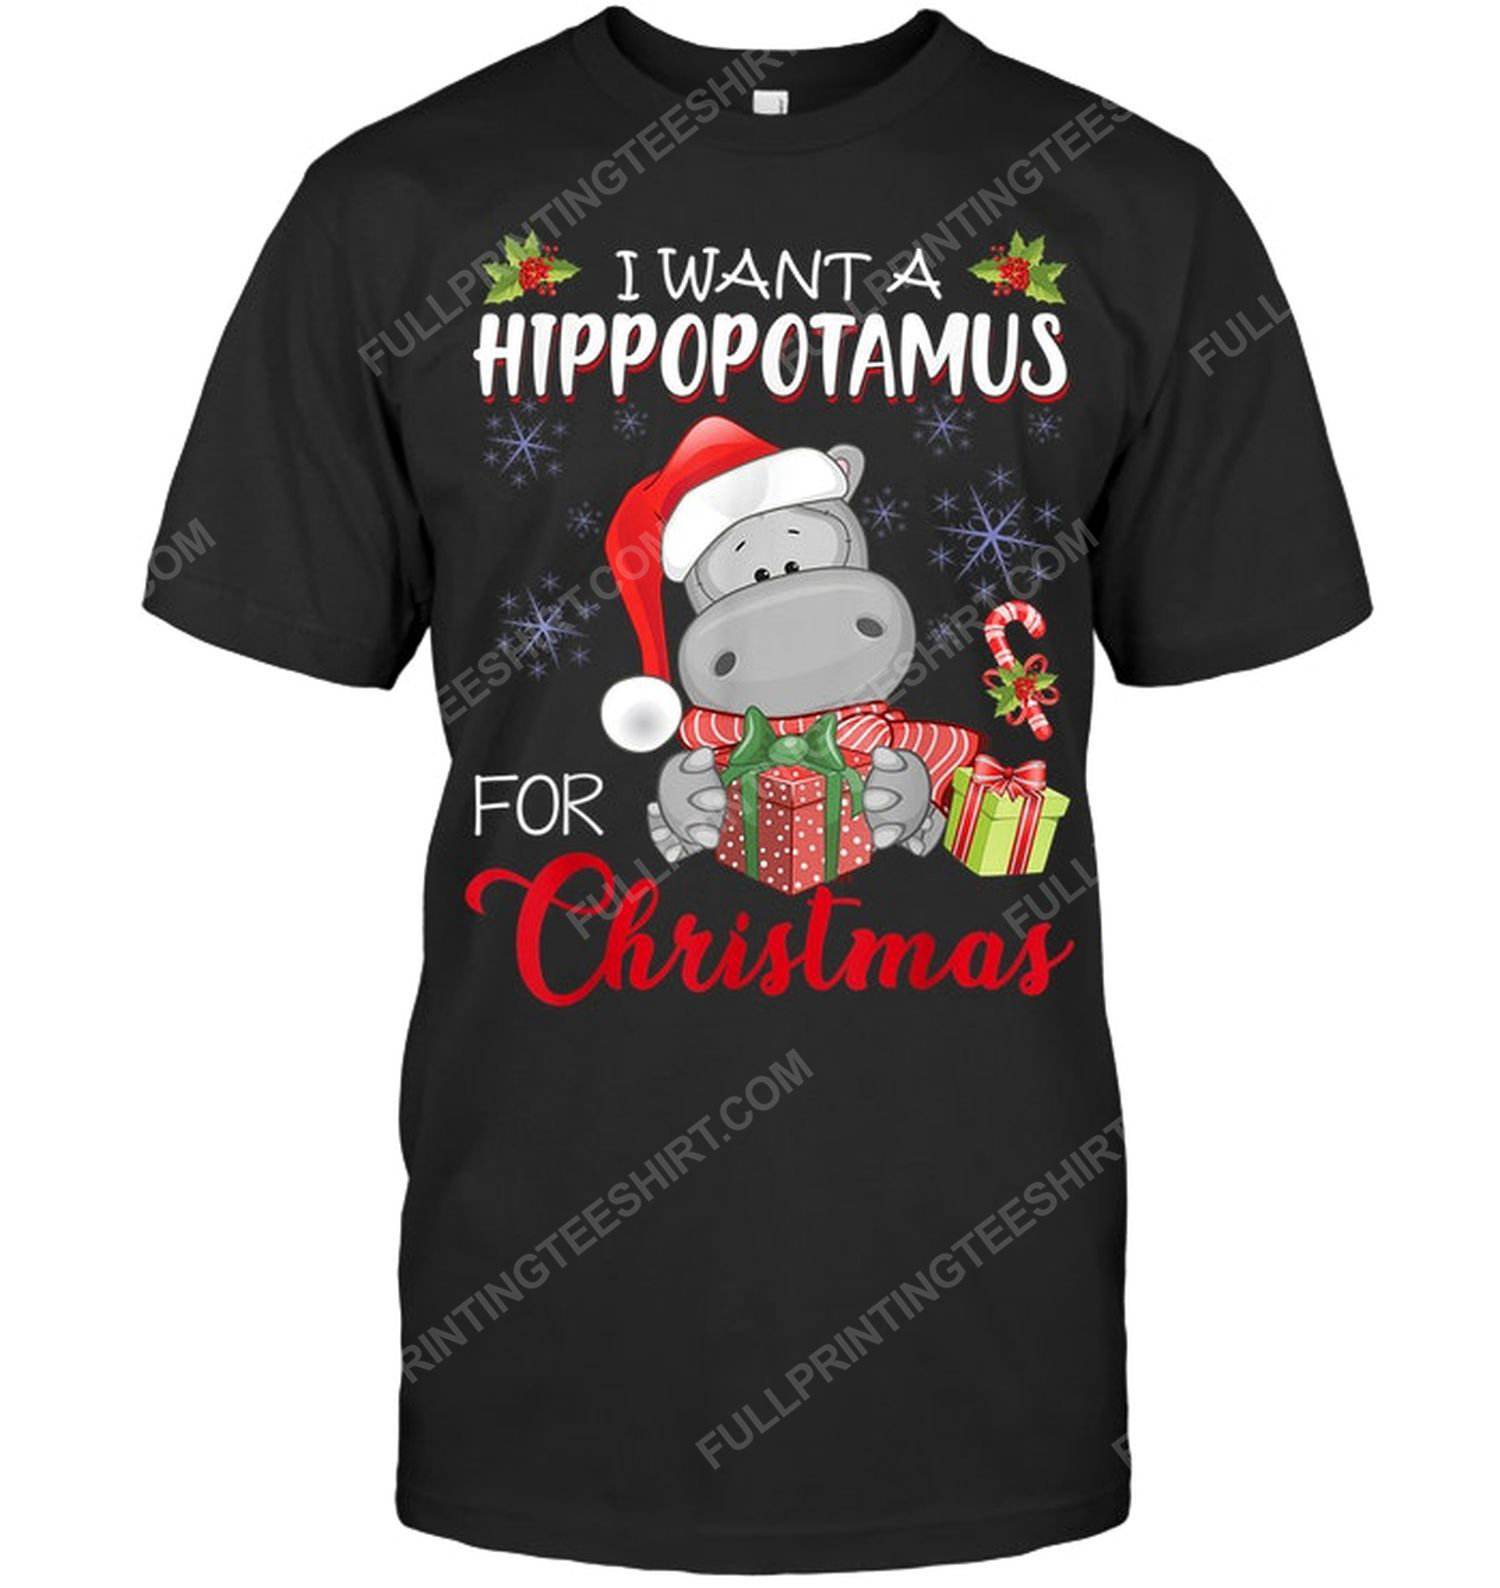 I want a hippopotamus for christmas tshirt